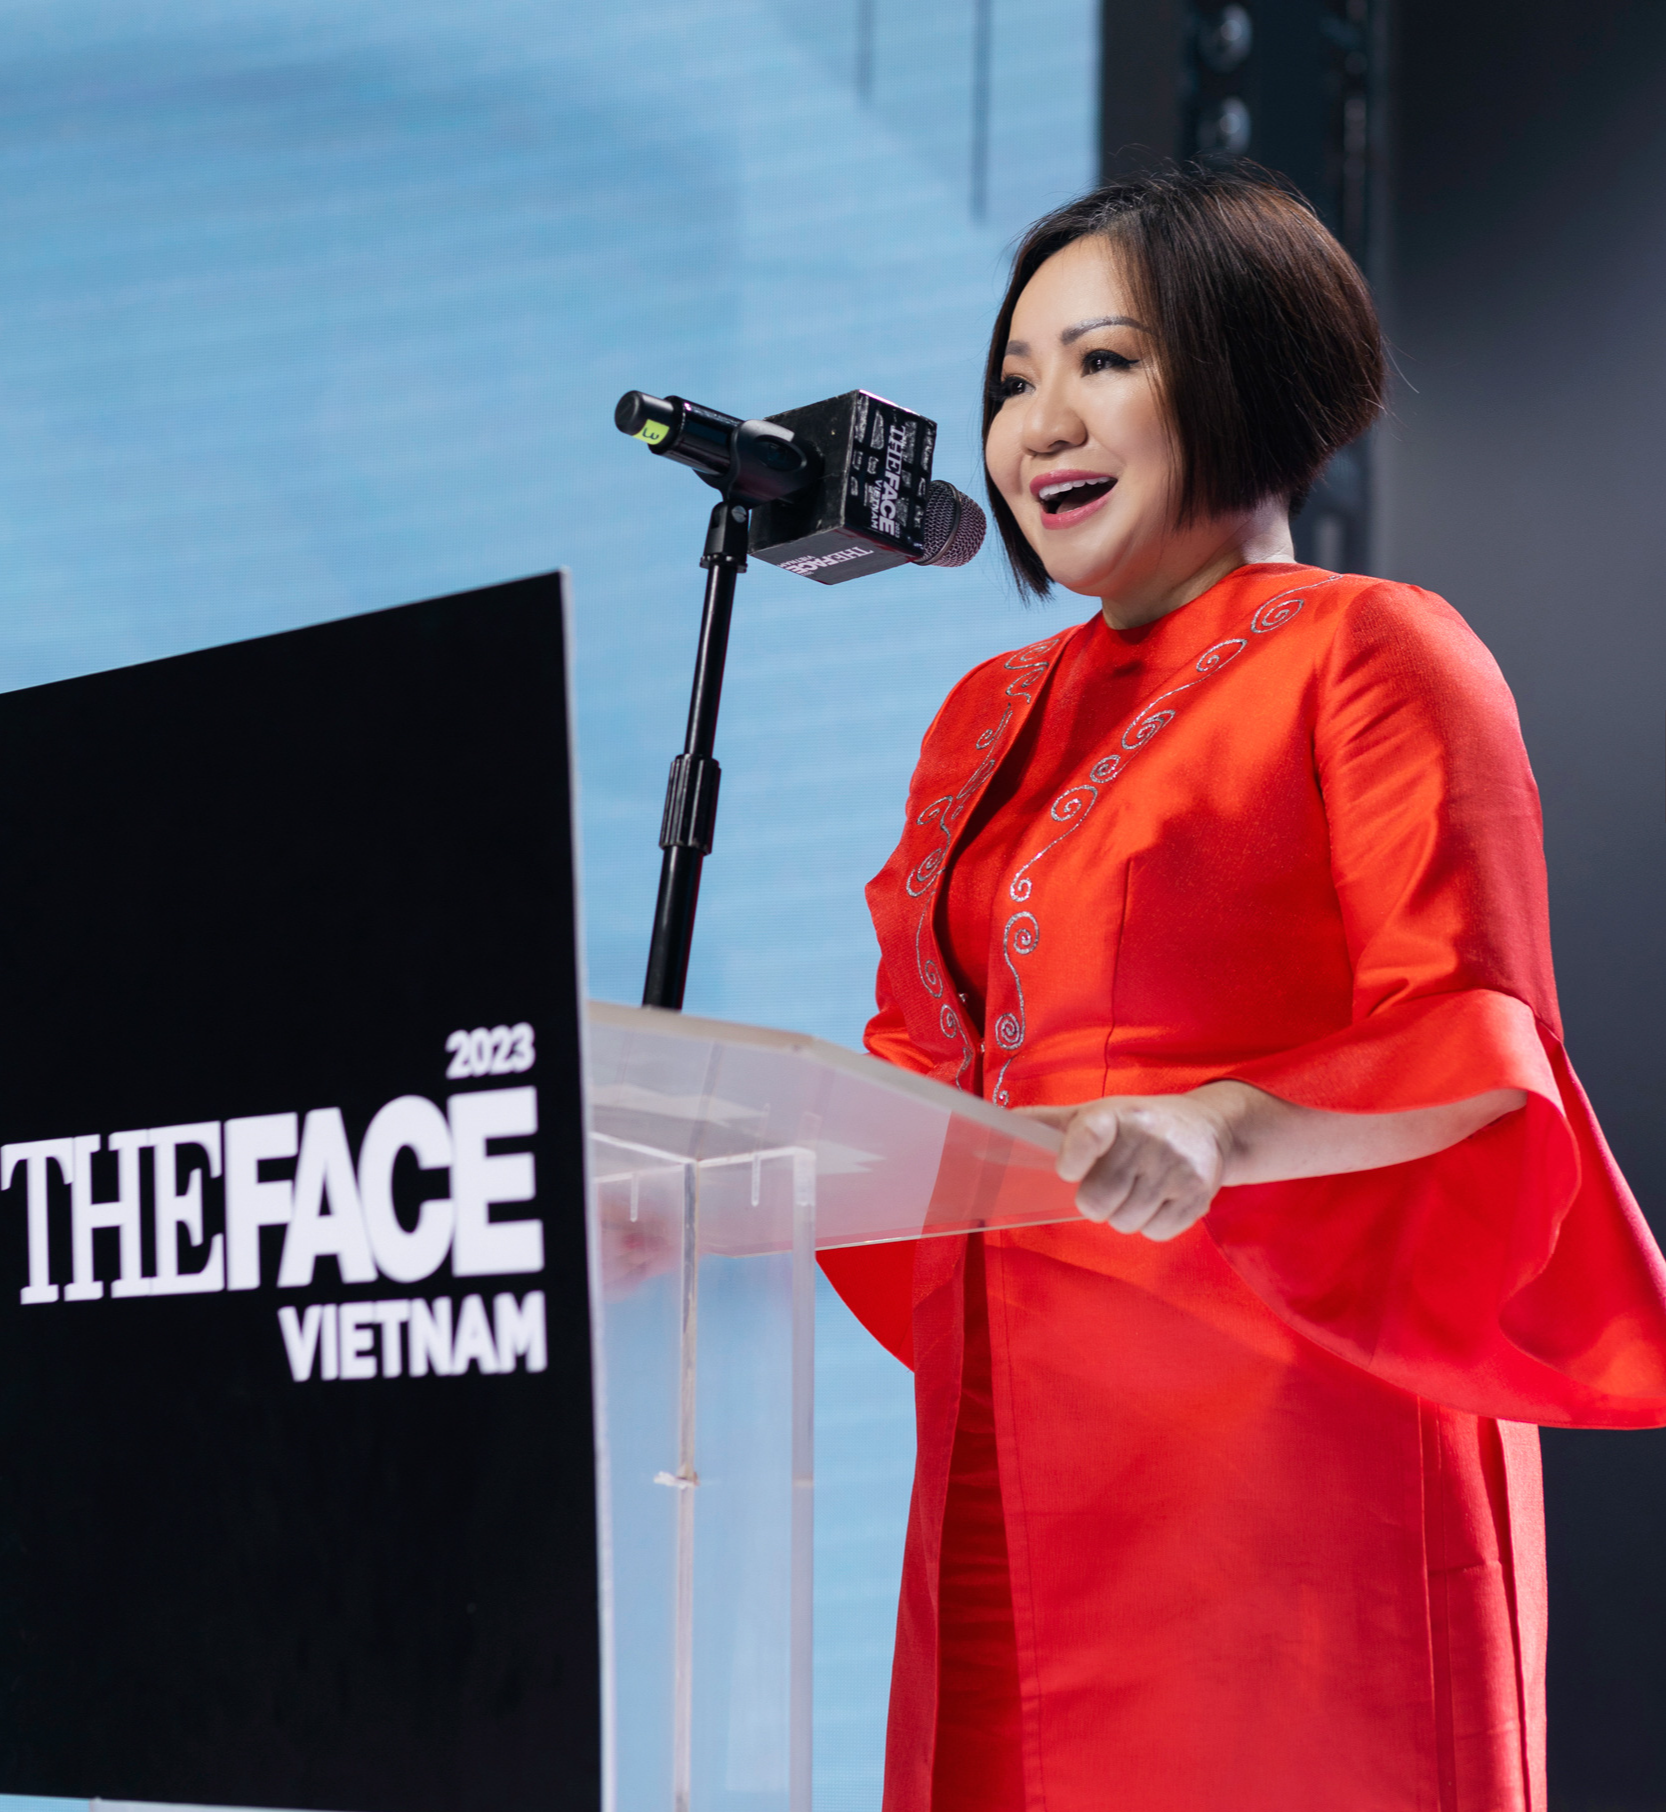 Bà Trang Lê - tổng đạo diễn và nhà sản xuất chương trình The Face Vietnam - dành nhiều tâm huyết cho dự án án này